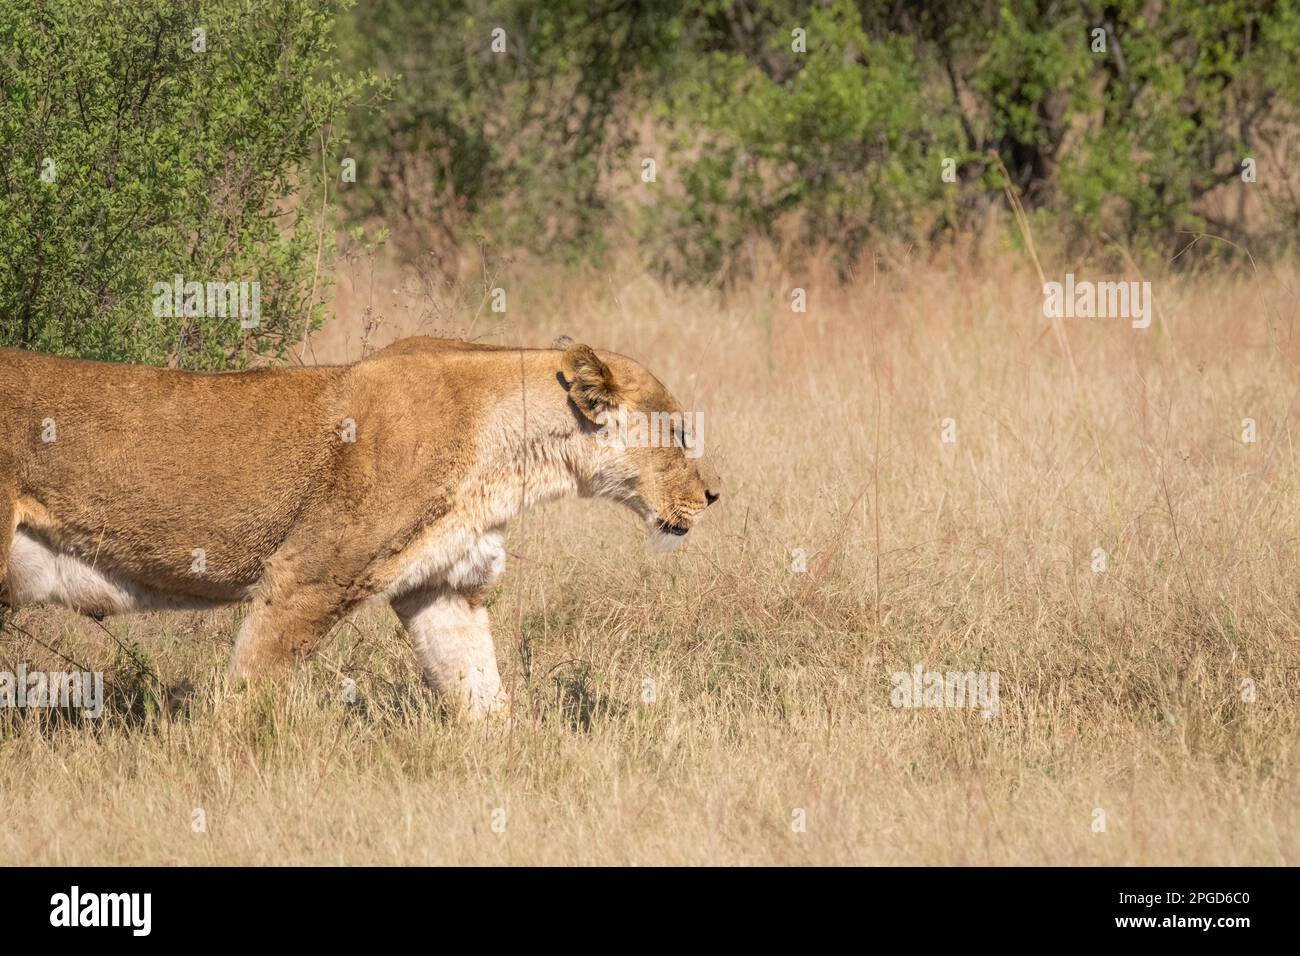 Löwin (Panthera leo), Porträt des weiblichen Löwengesichts und Körpers, die von links nach rechts übergehen. Okavango Delta, Botsuana, Afrika Stockfoto